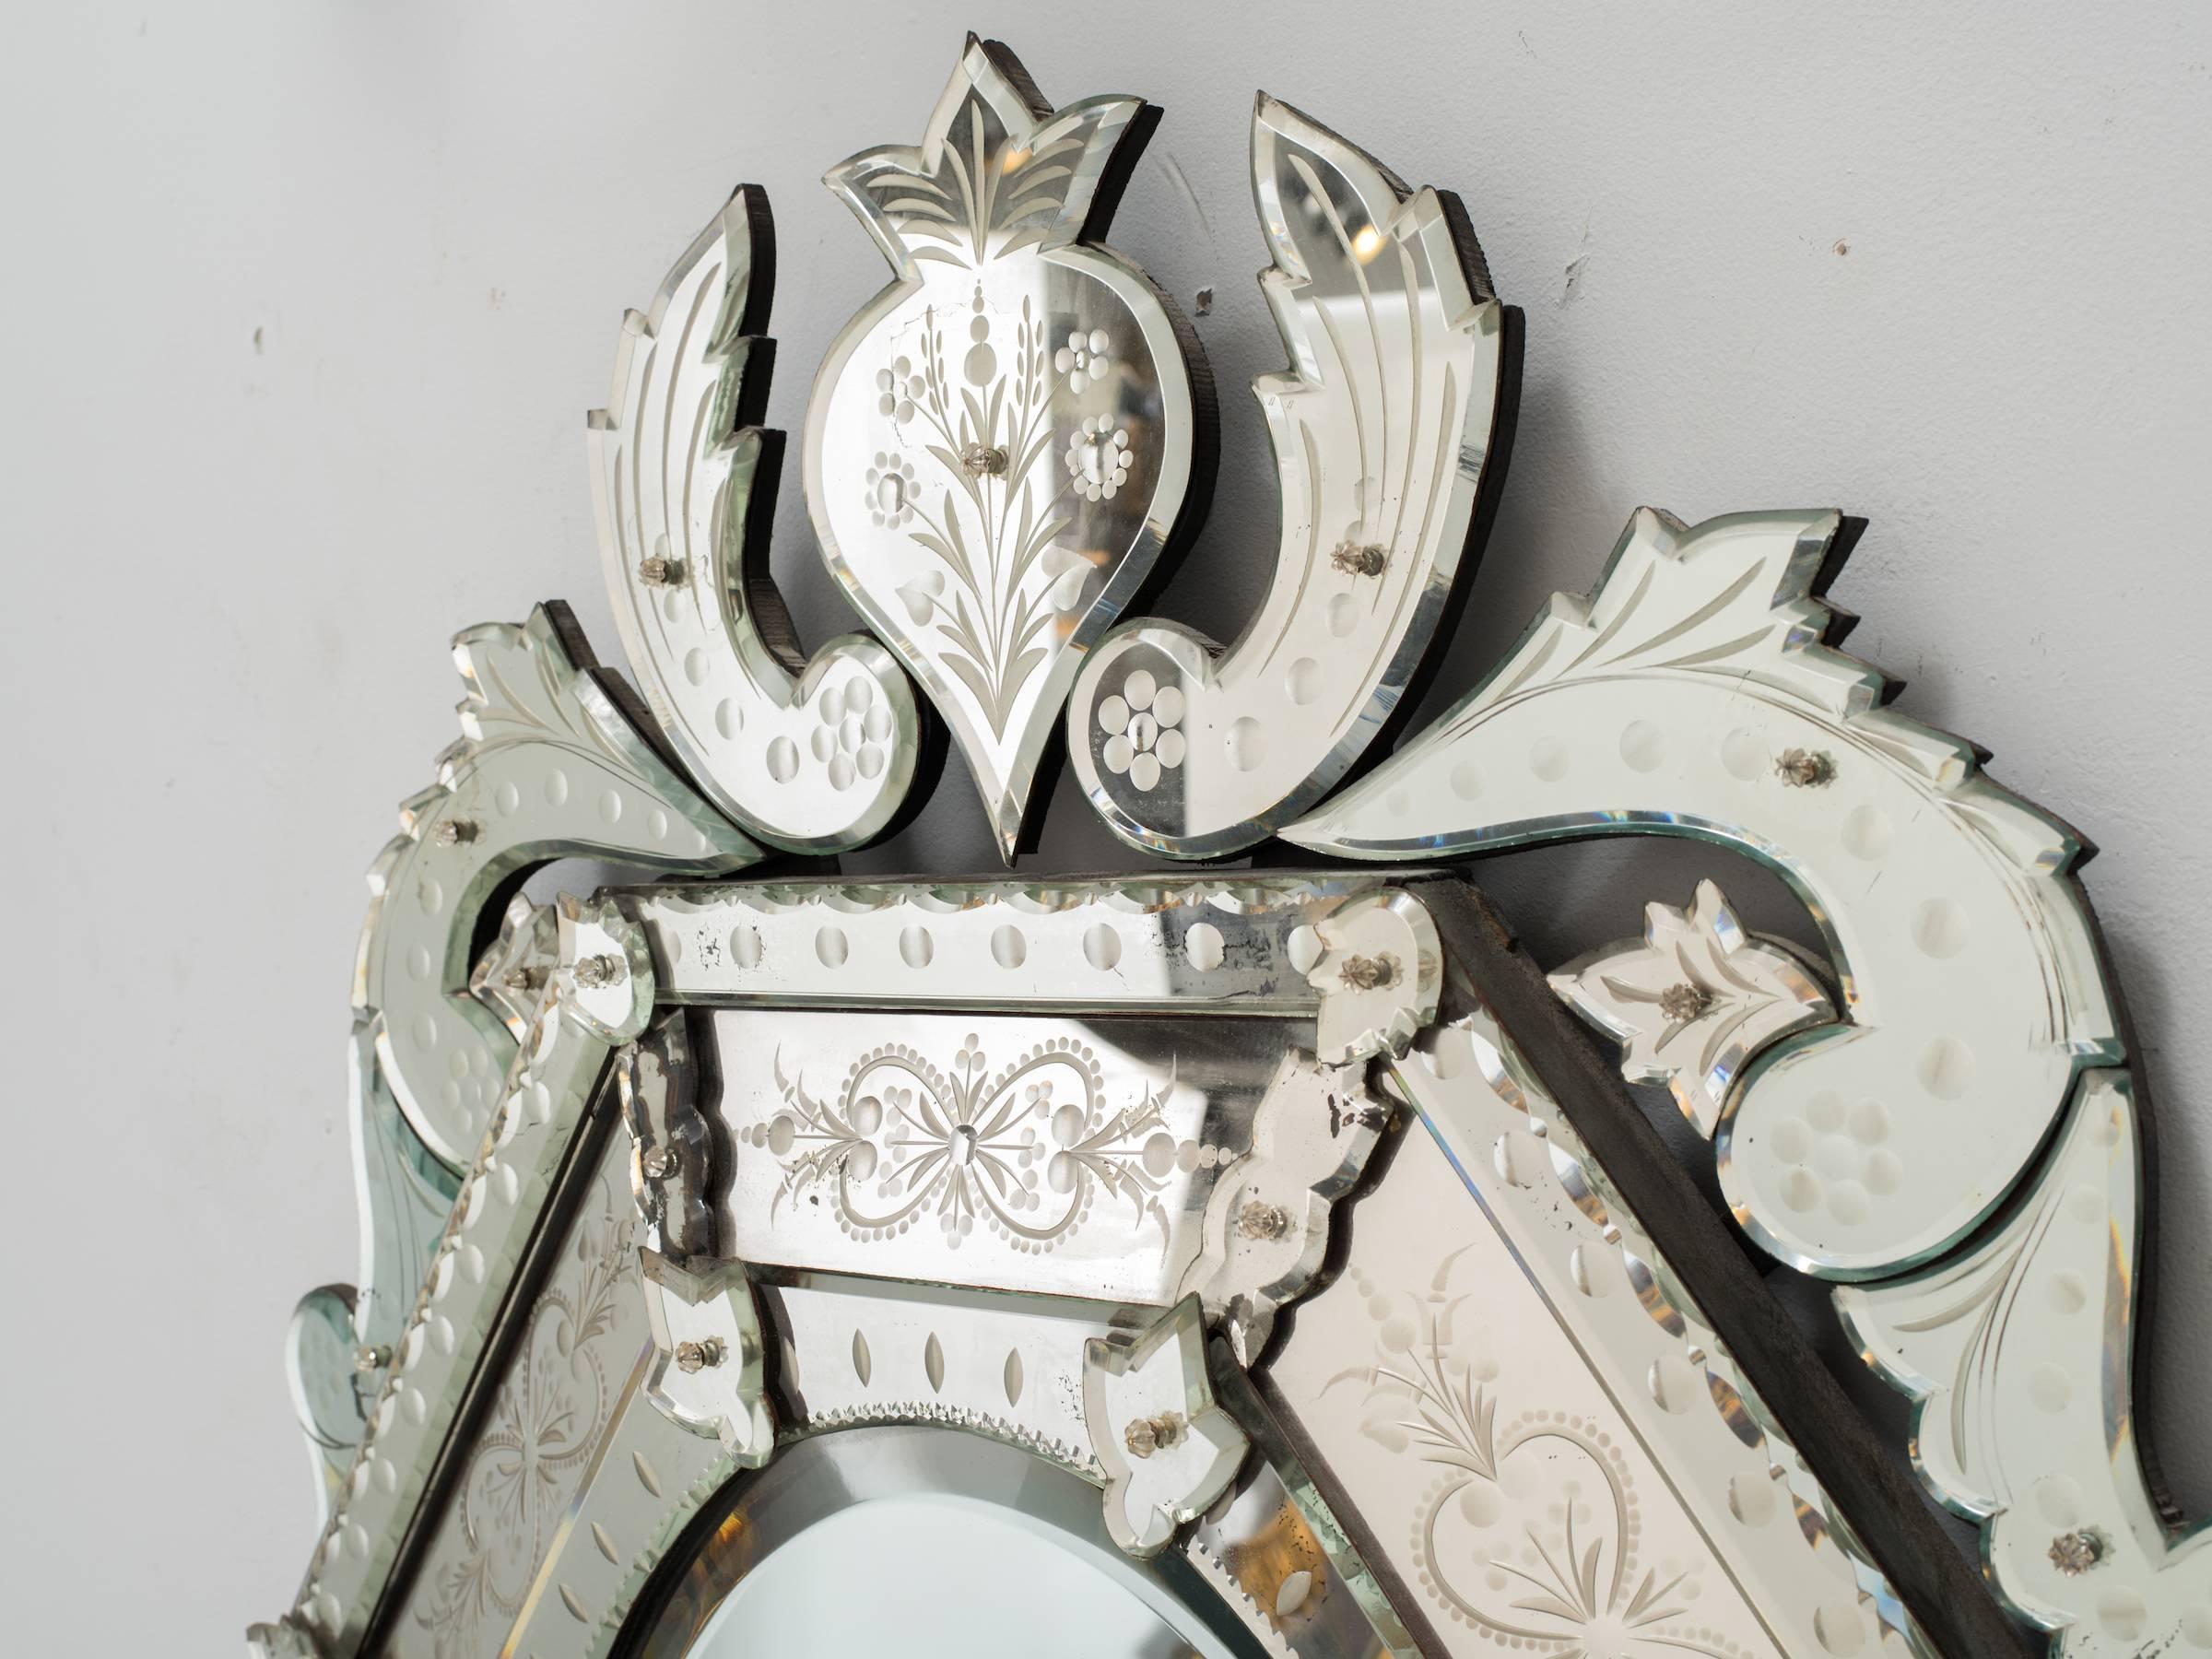  1930s octagonal Venetian mirror with crown.